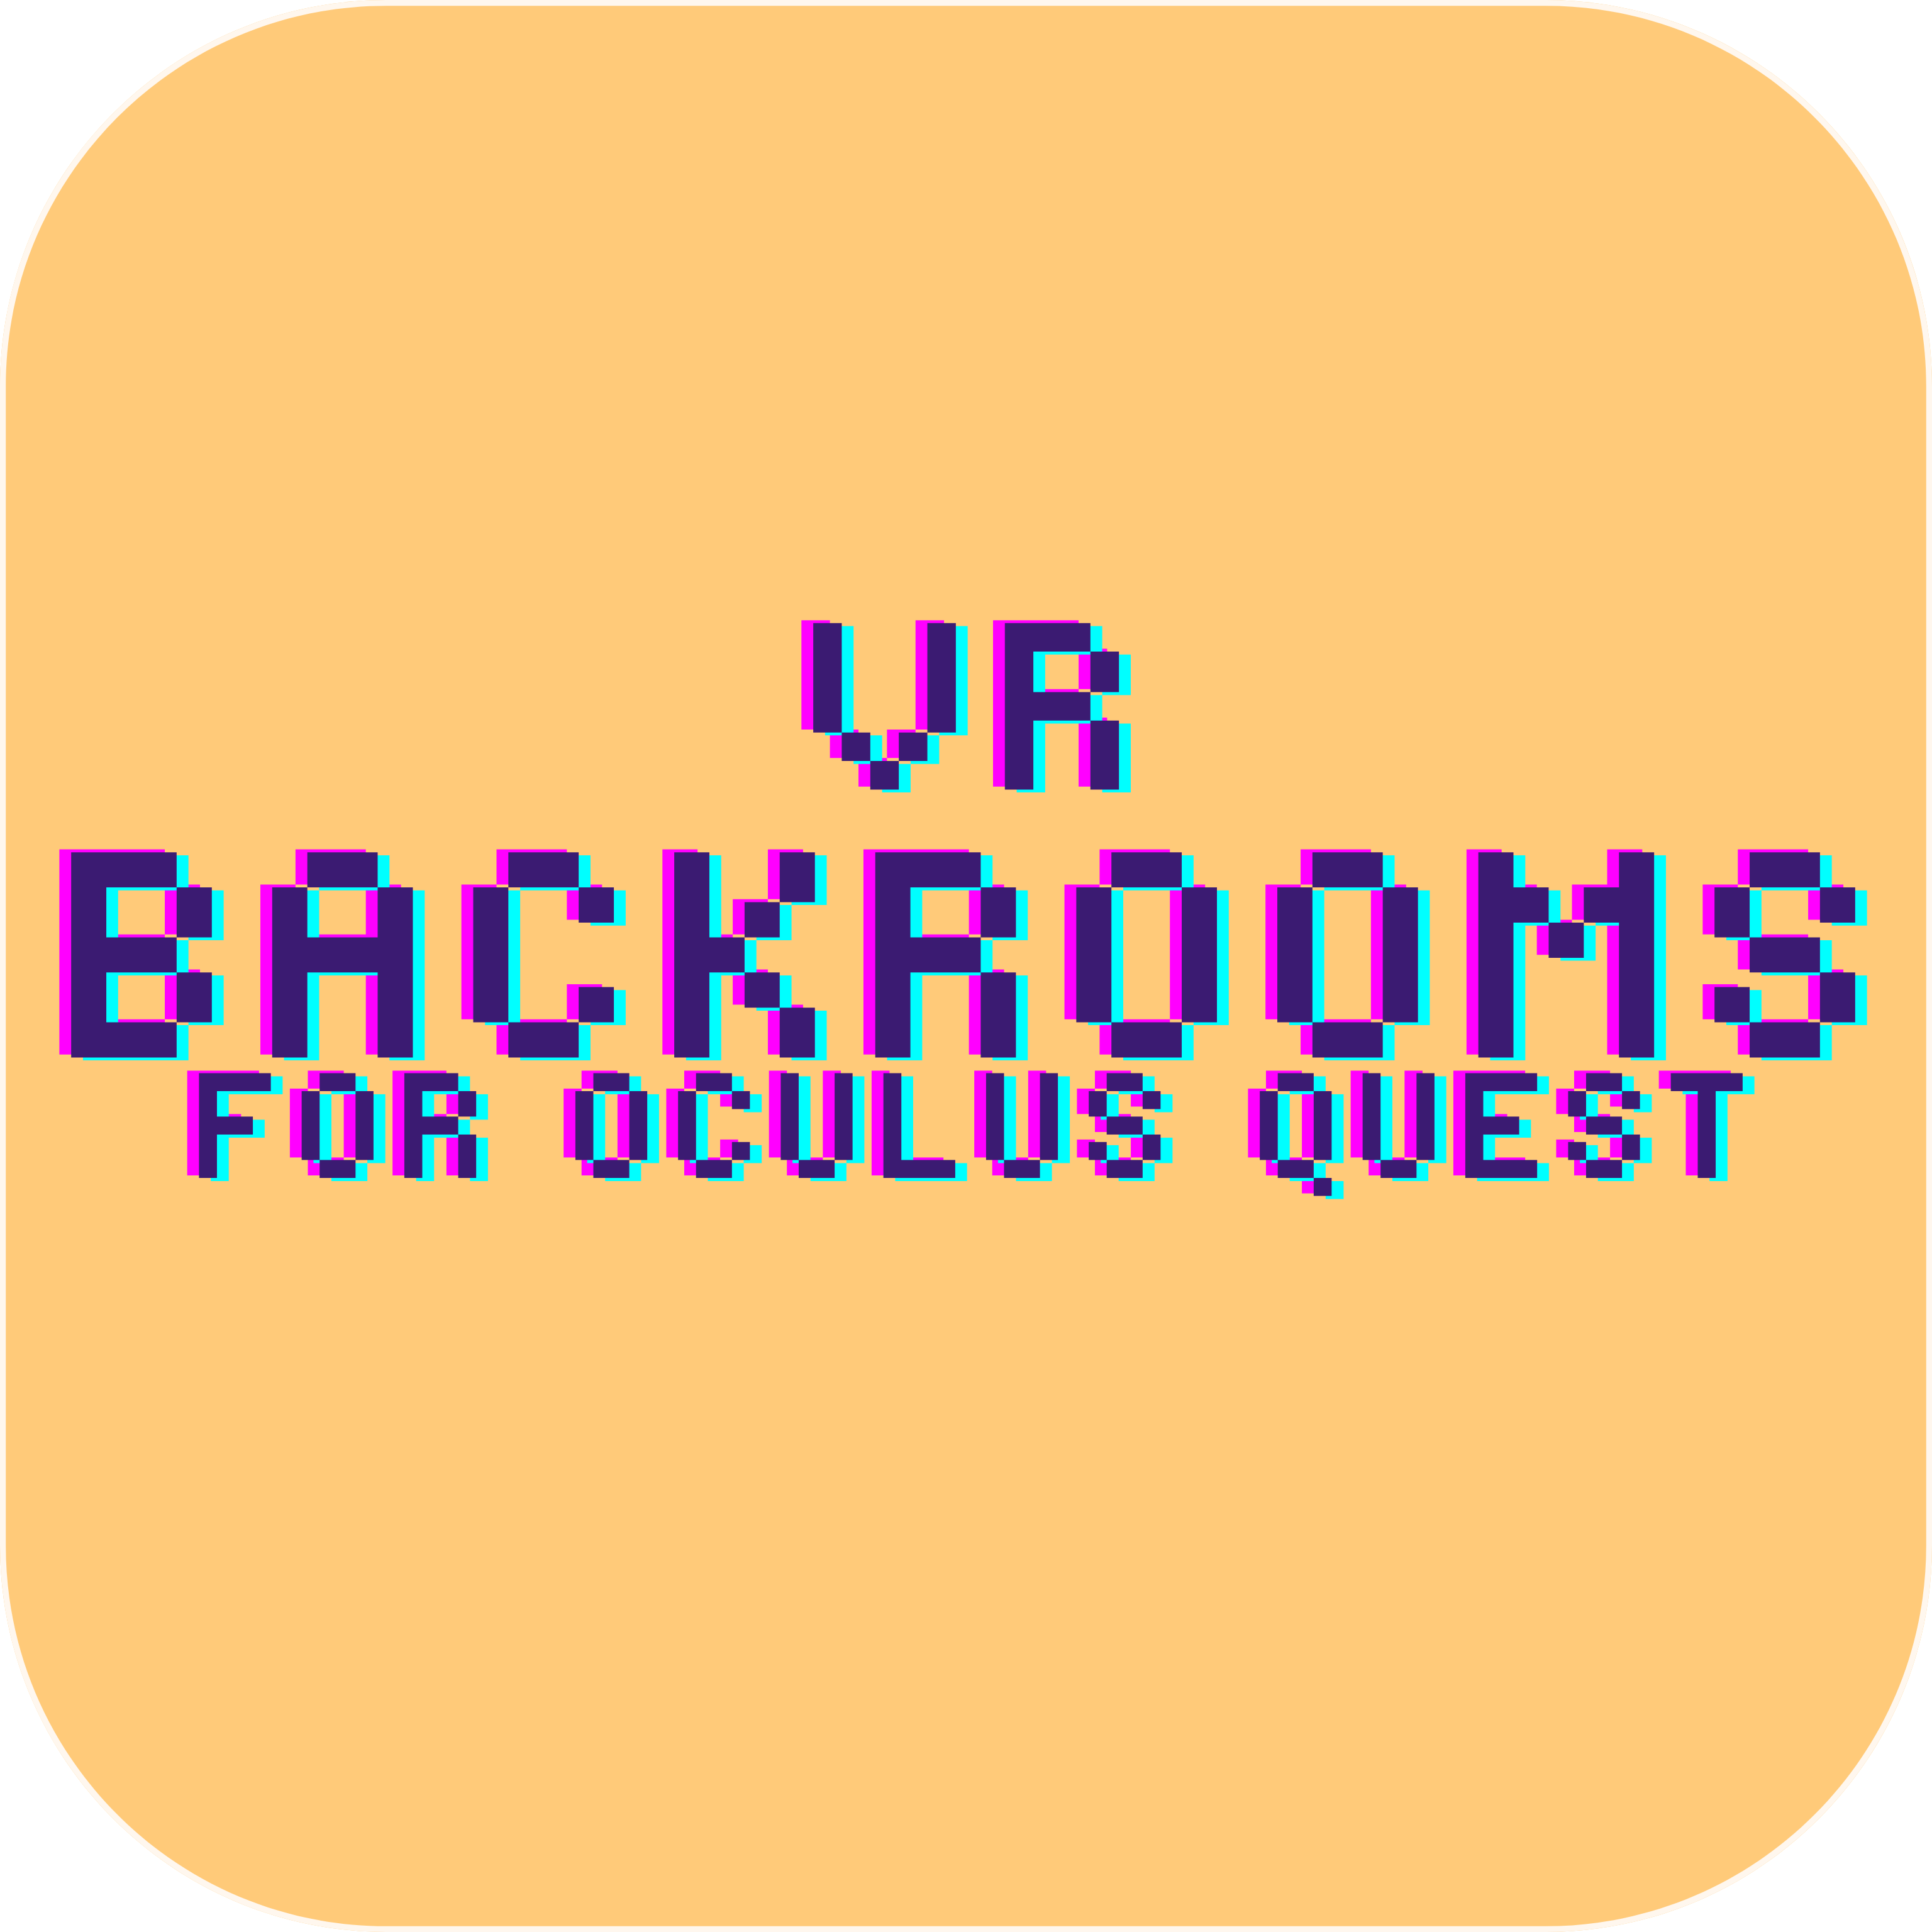 BEST COOP The Backrooms VR Game Got UPDATED!!! (Noclip VR Oculus Quest 2) 